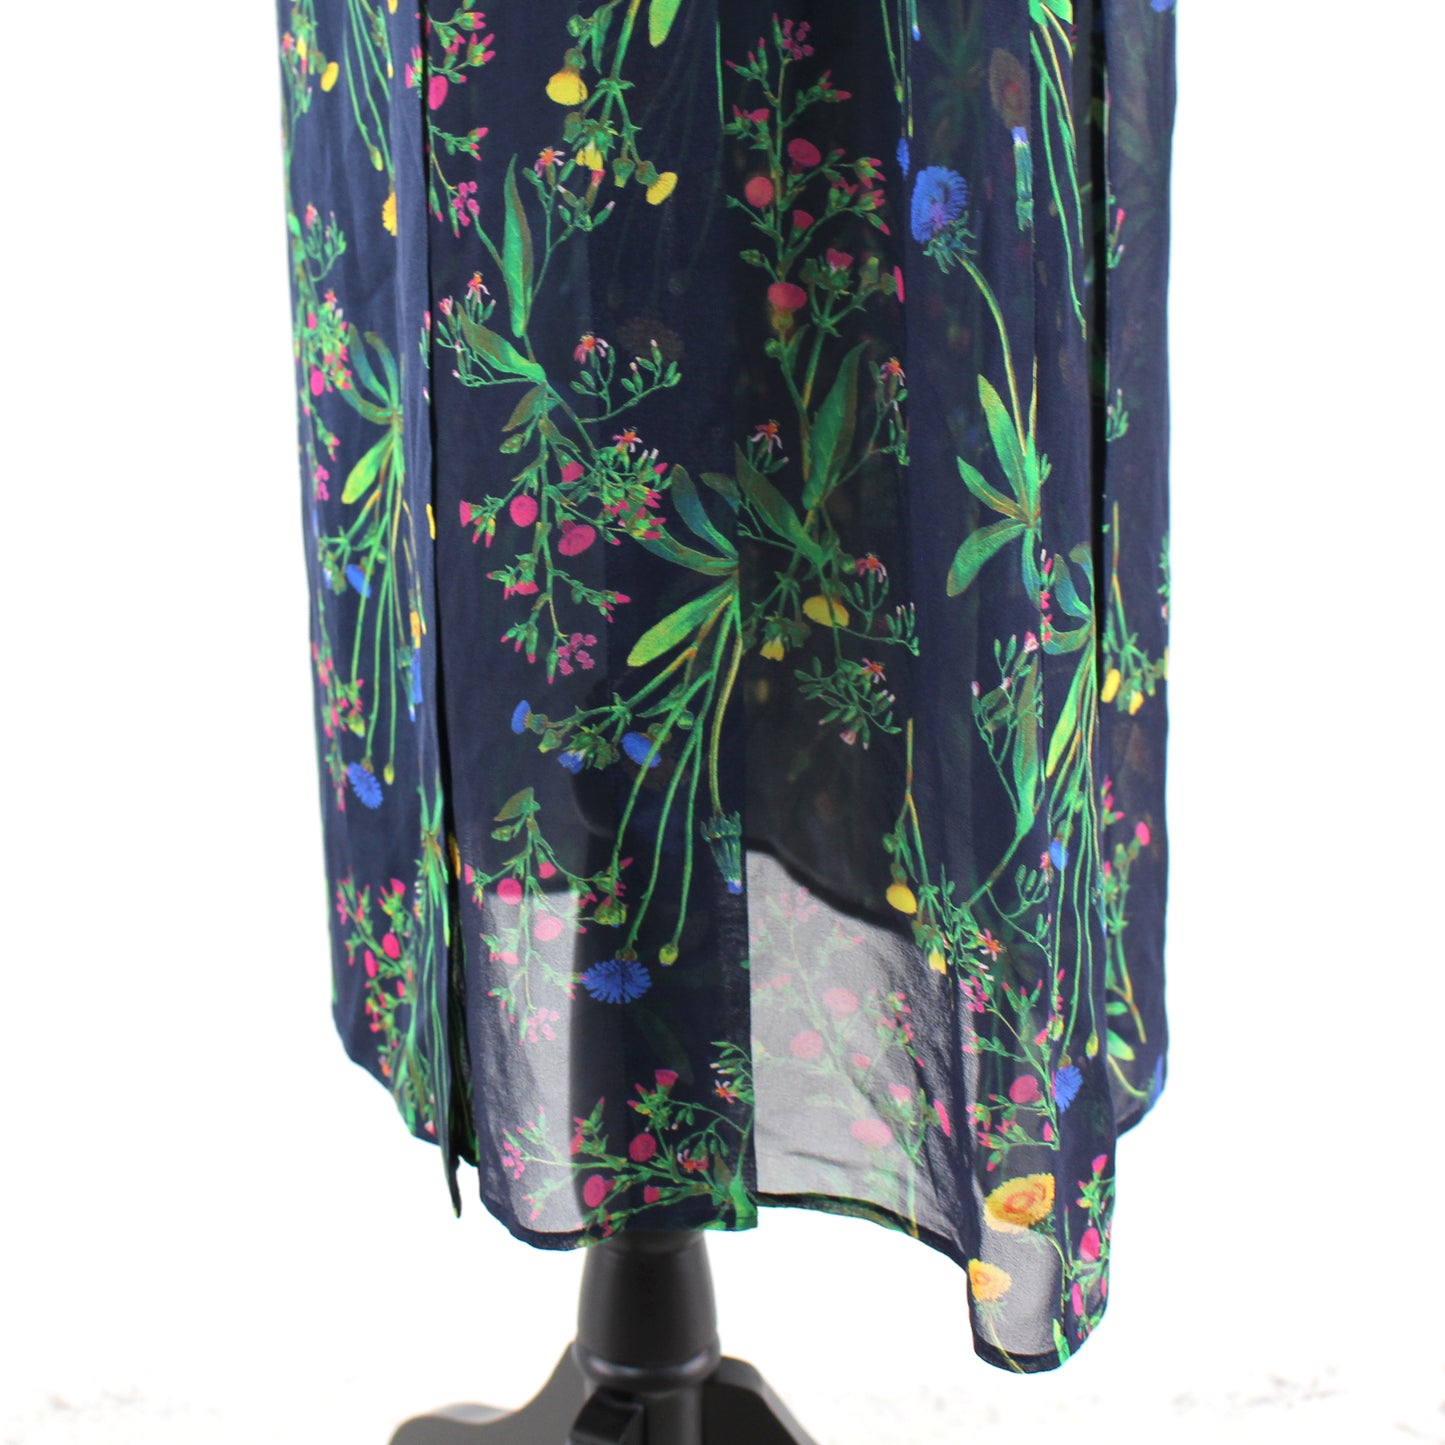 Marissa Webb Silk Floral Skirt